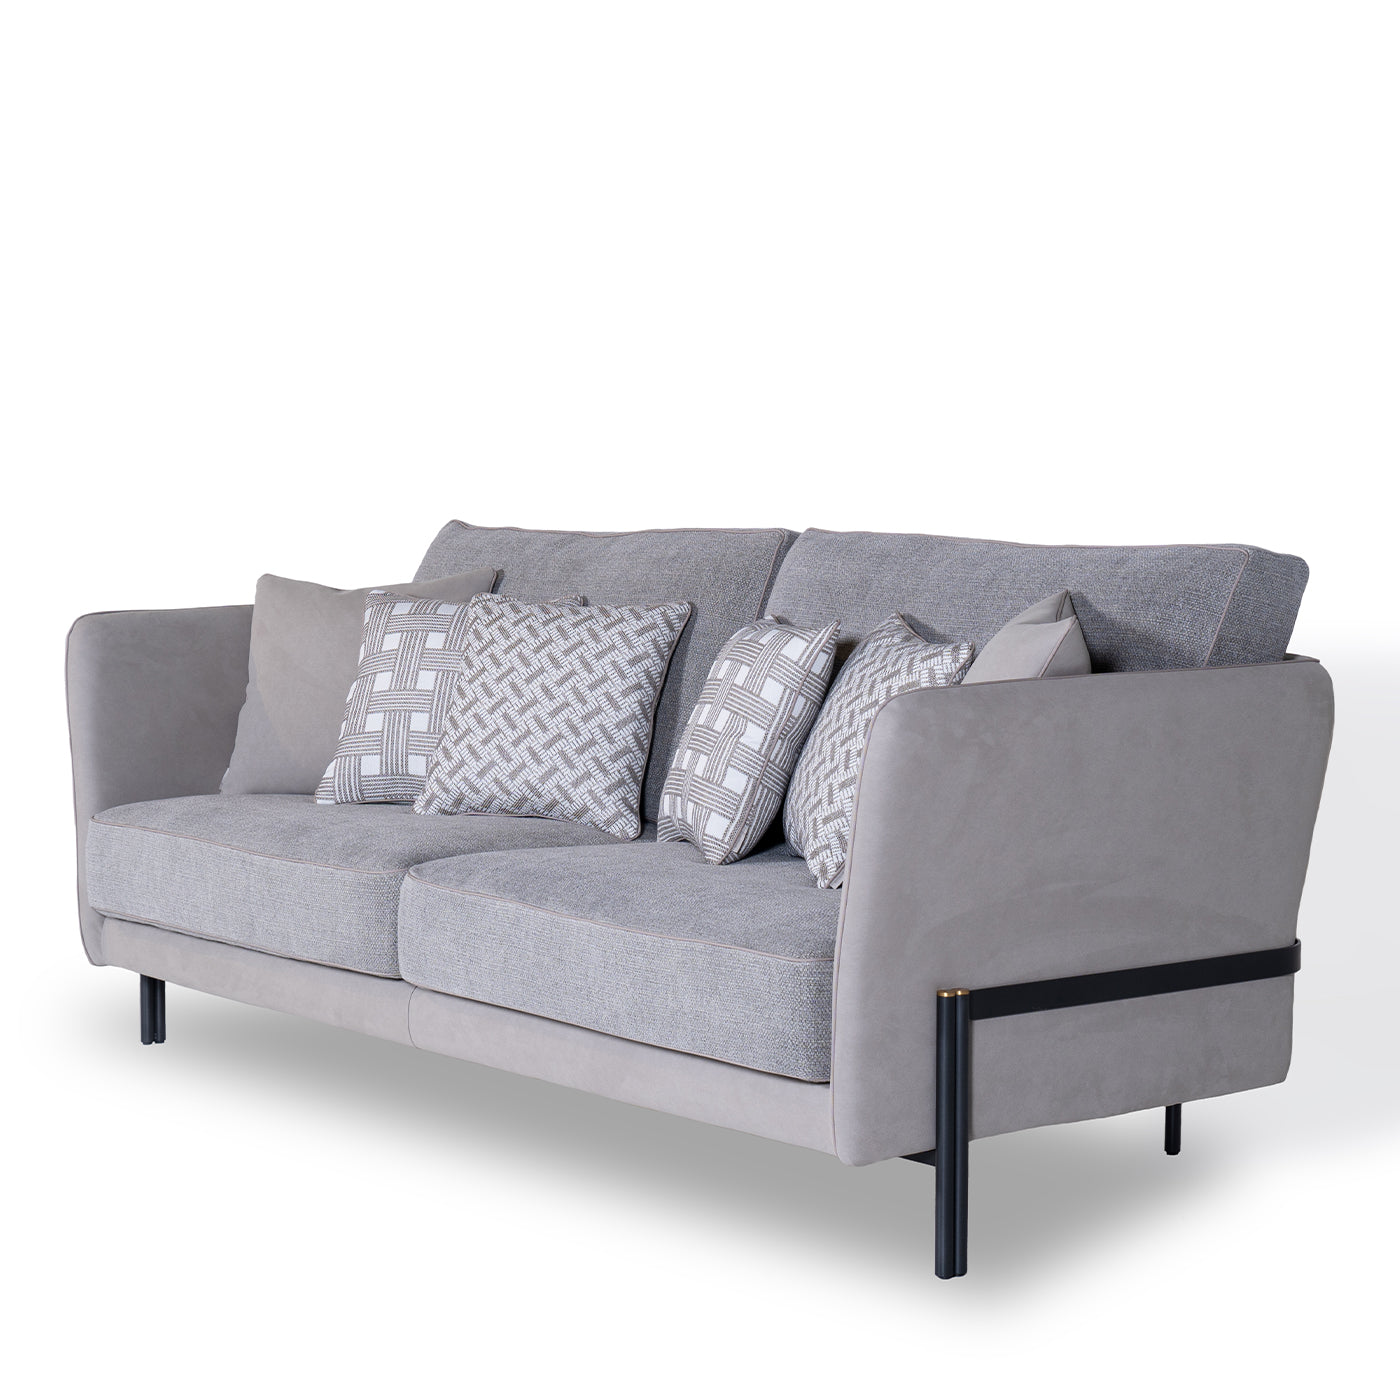 Universal Gray Sofa by Marco & Giulio Mantellassi  - Alternative view 3